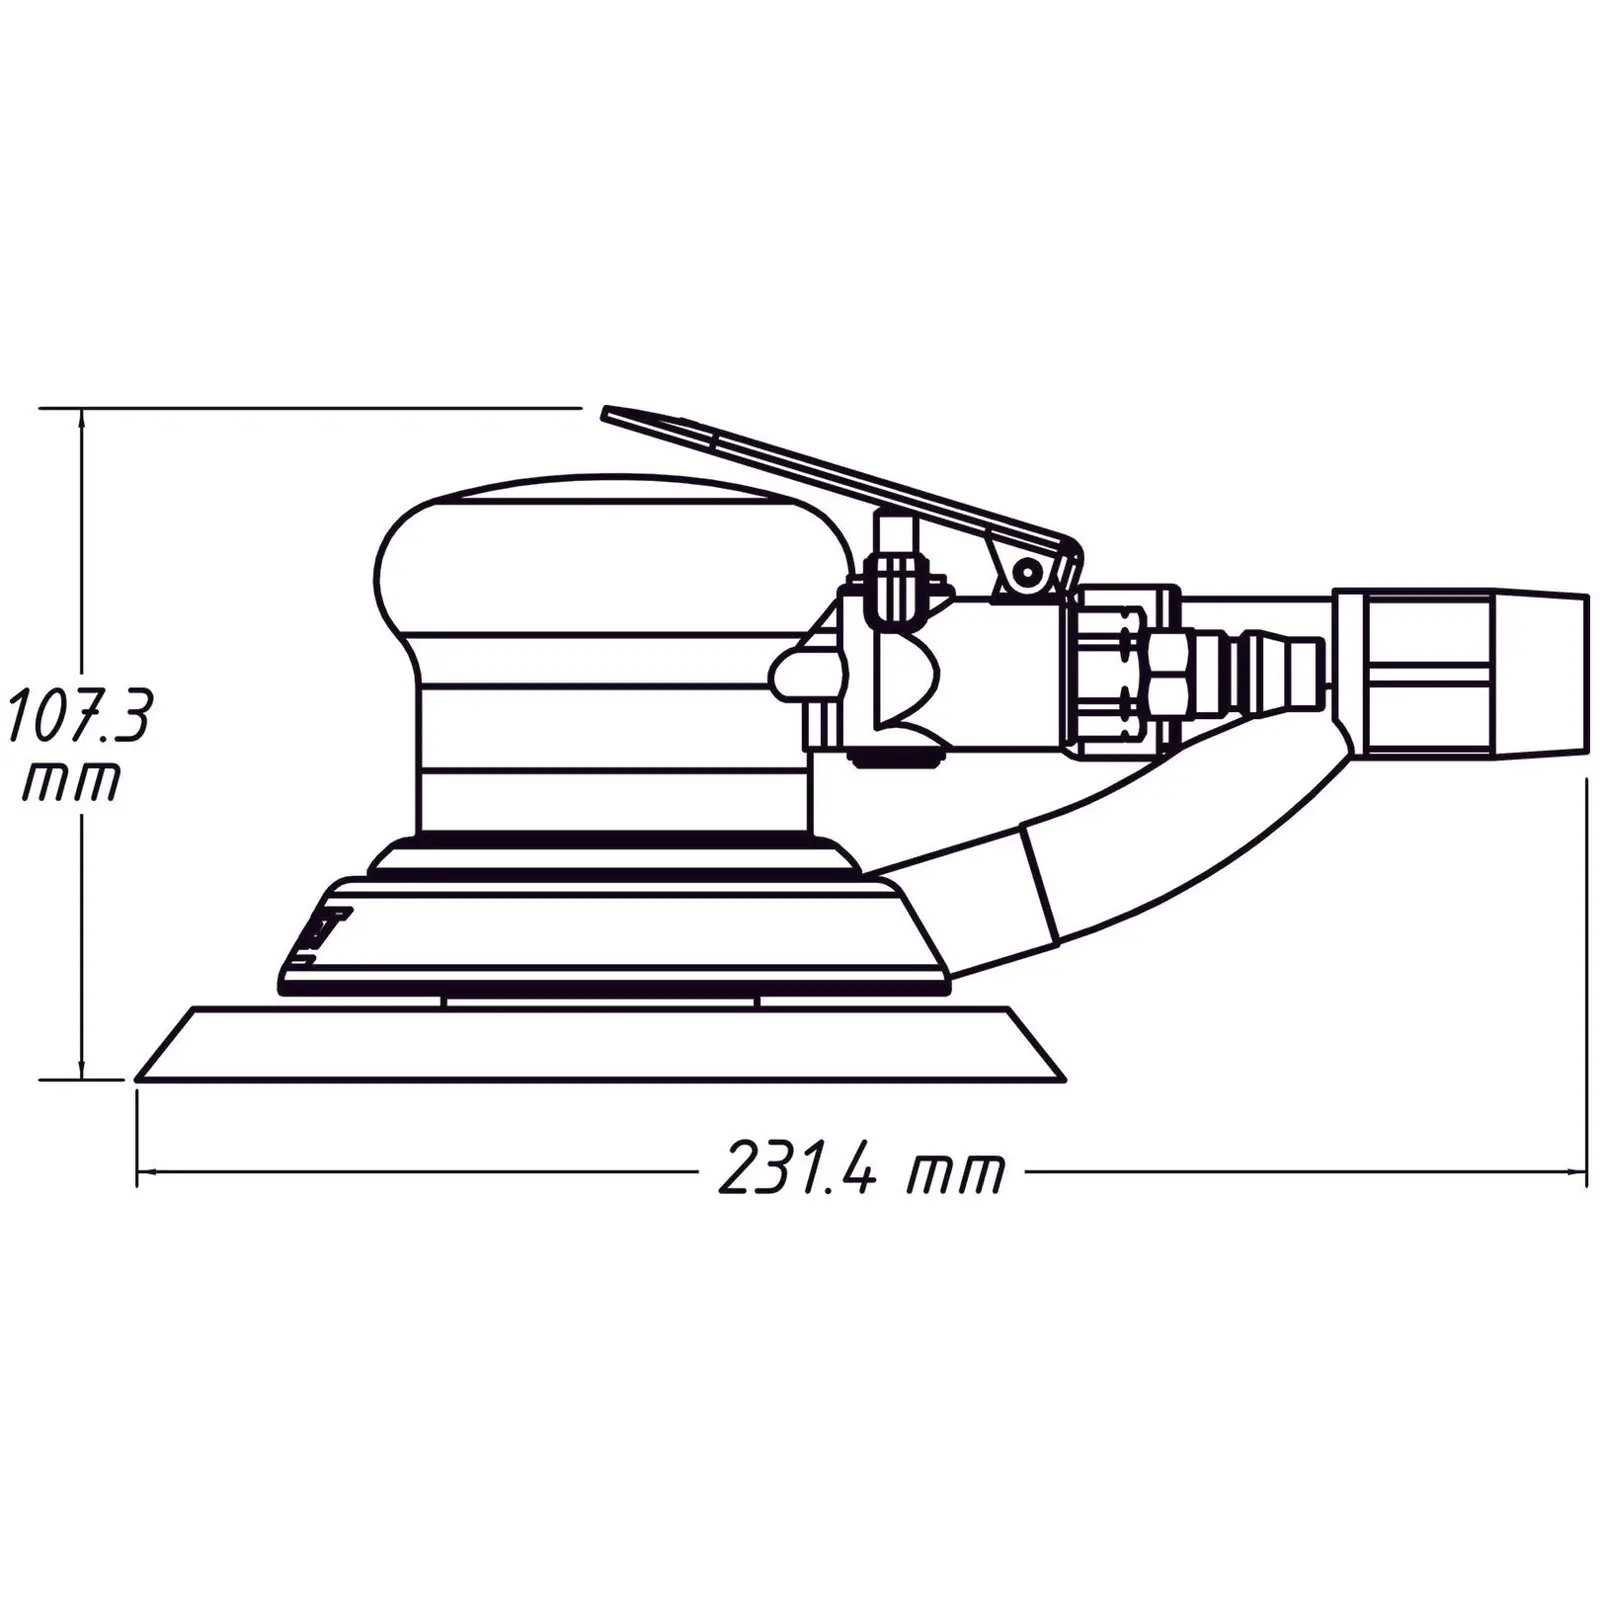 Ponceuse excentrique - 375 W - Ø 150 mm - Vitesse réglable en continu jusqu'à 12.000 tr/min